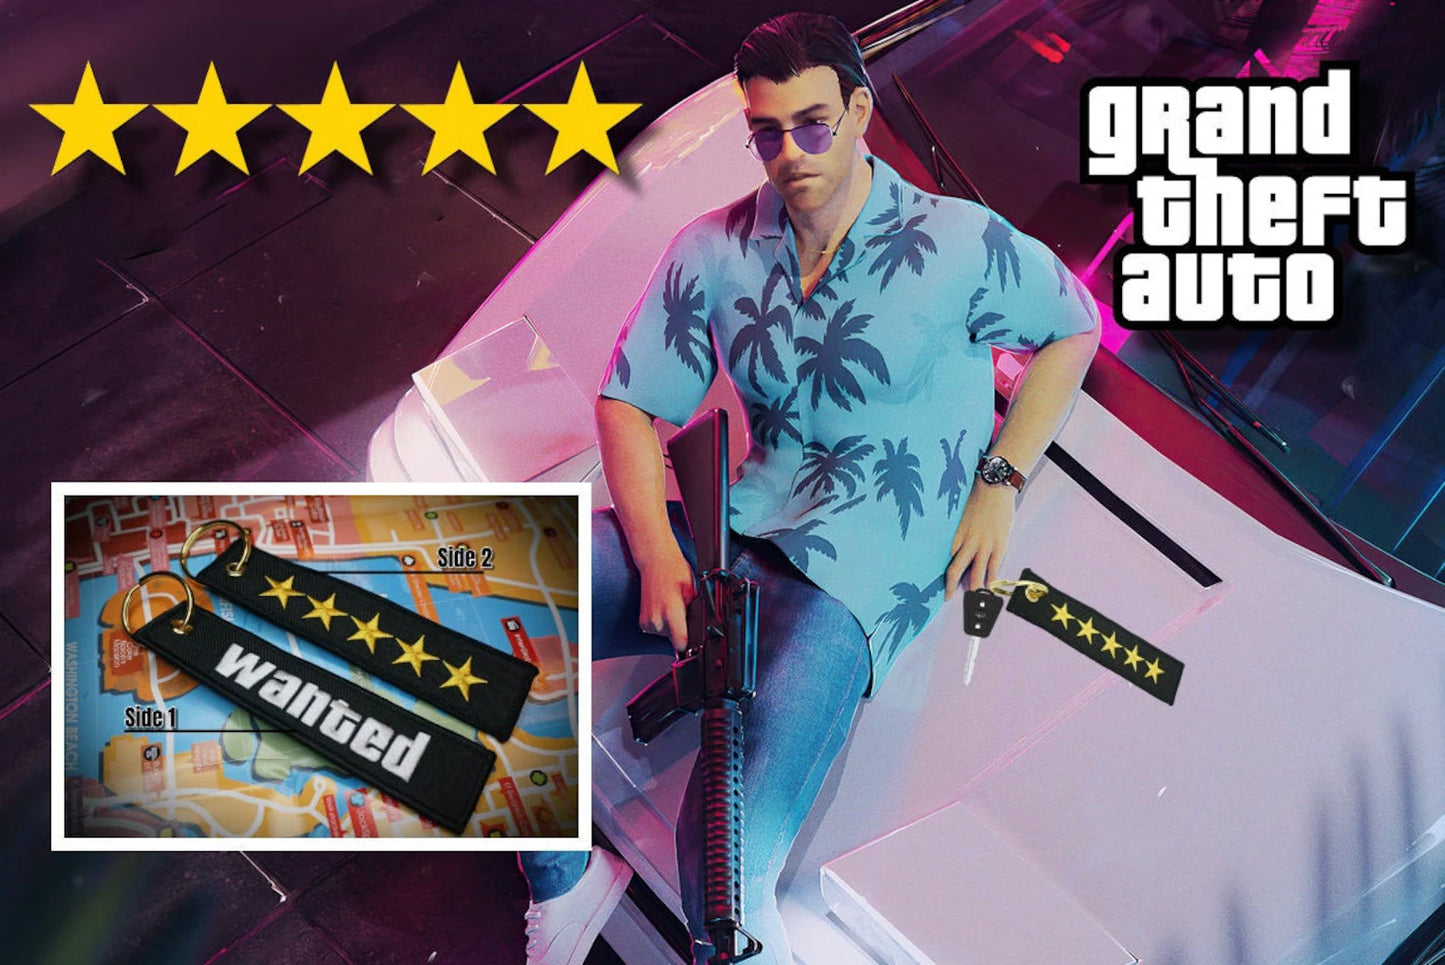 Llavero GTA Wanted Level, 5 estrellas, bordado, accesorio de estilo Grand Theft Auto